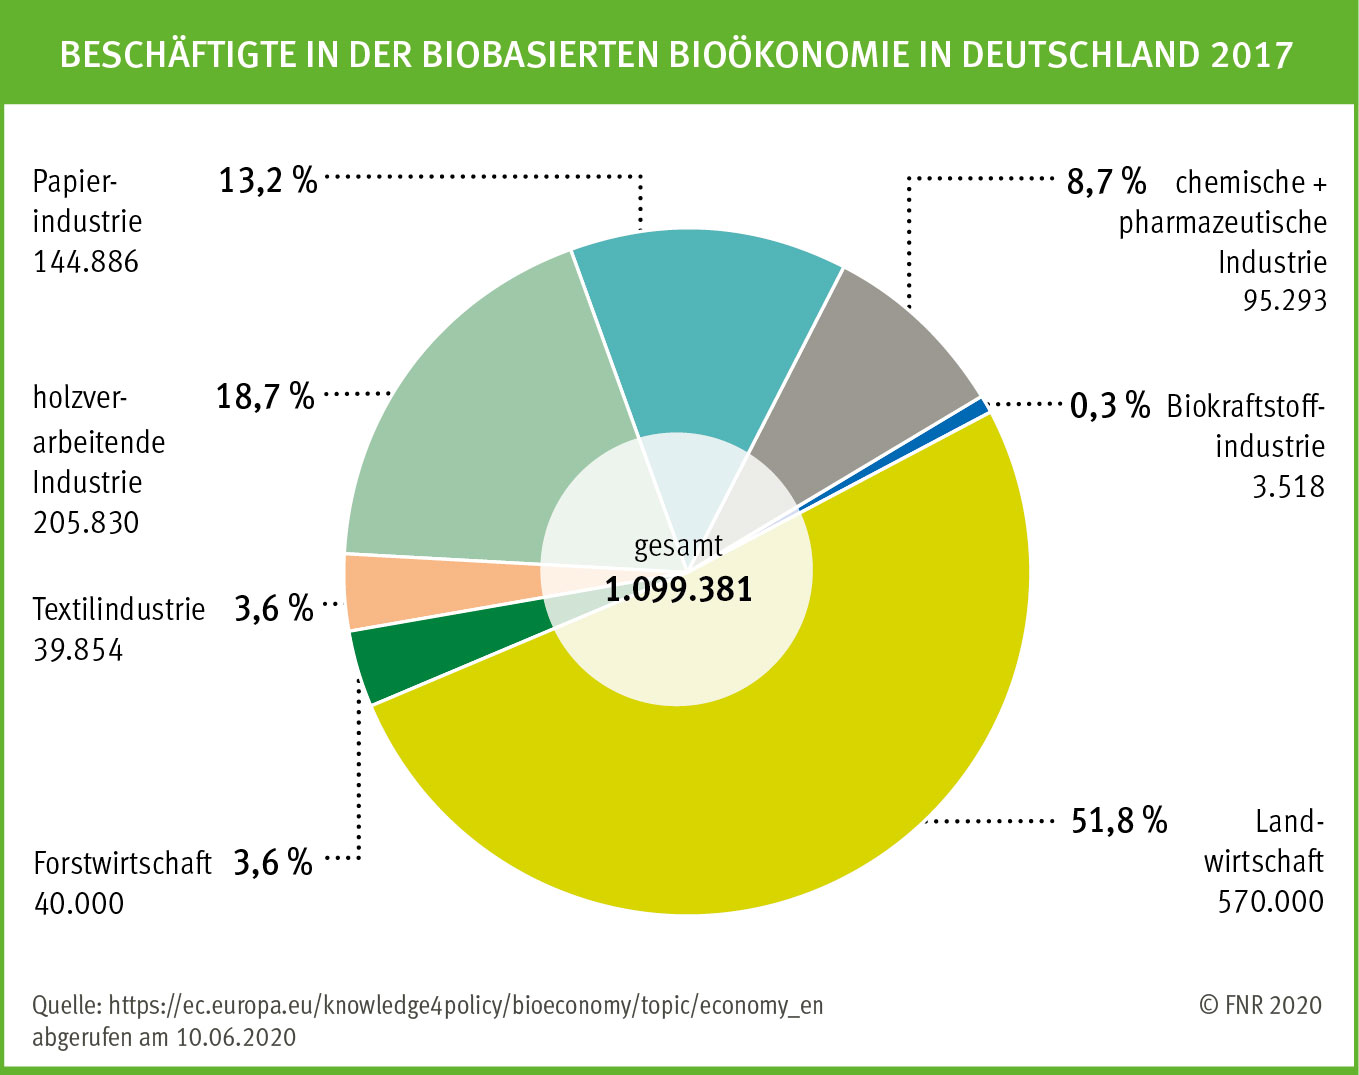 Abb. 1: Beschäftigte in der deutschen Bioökonomie